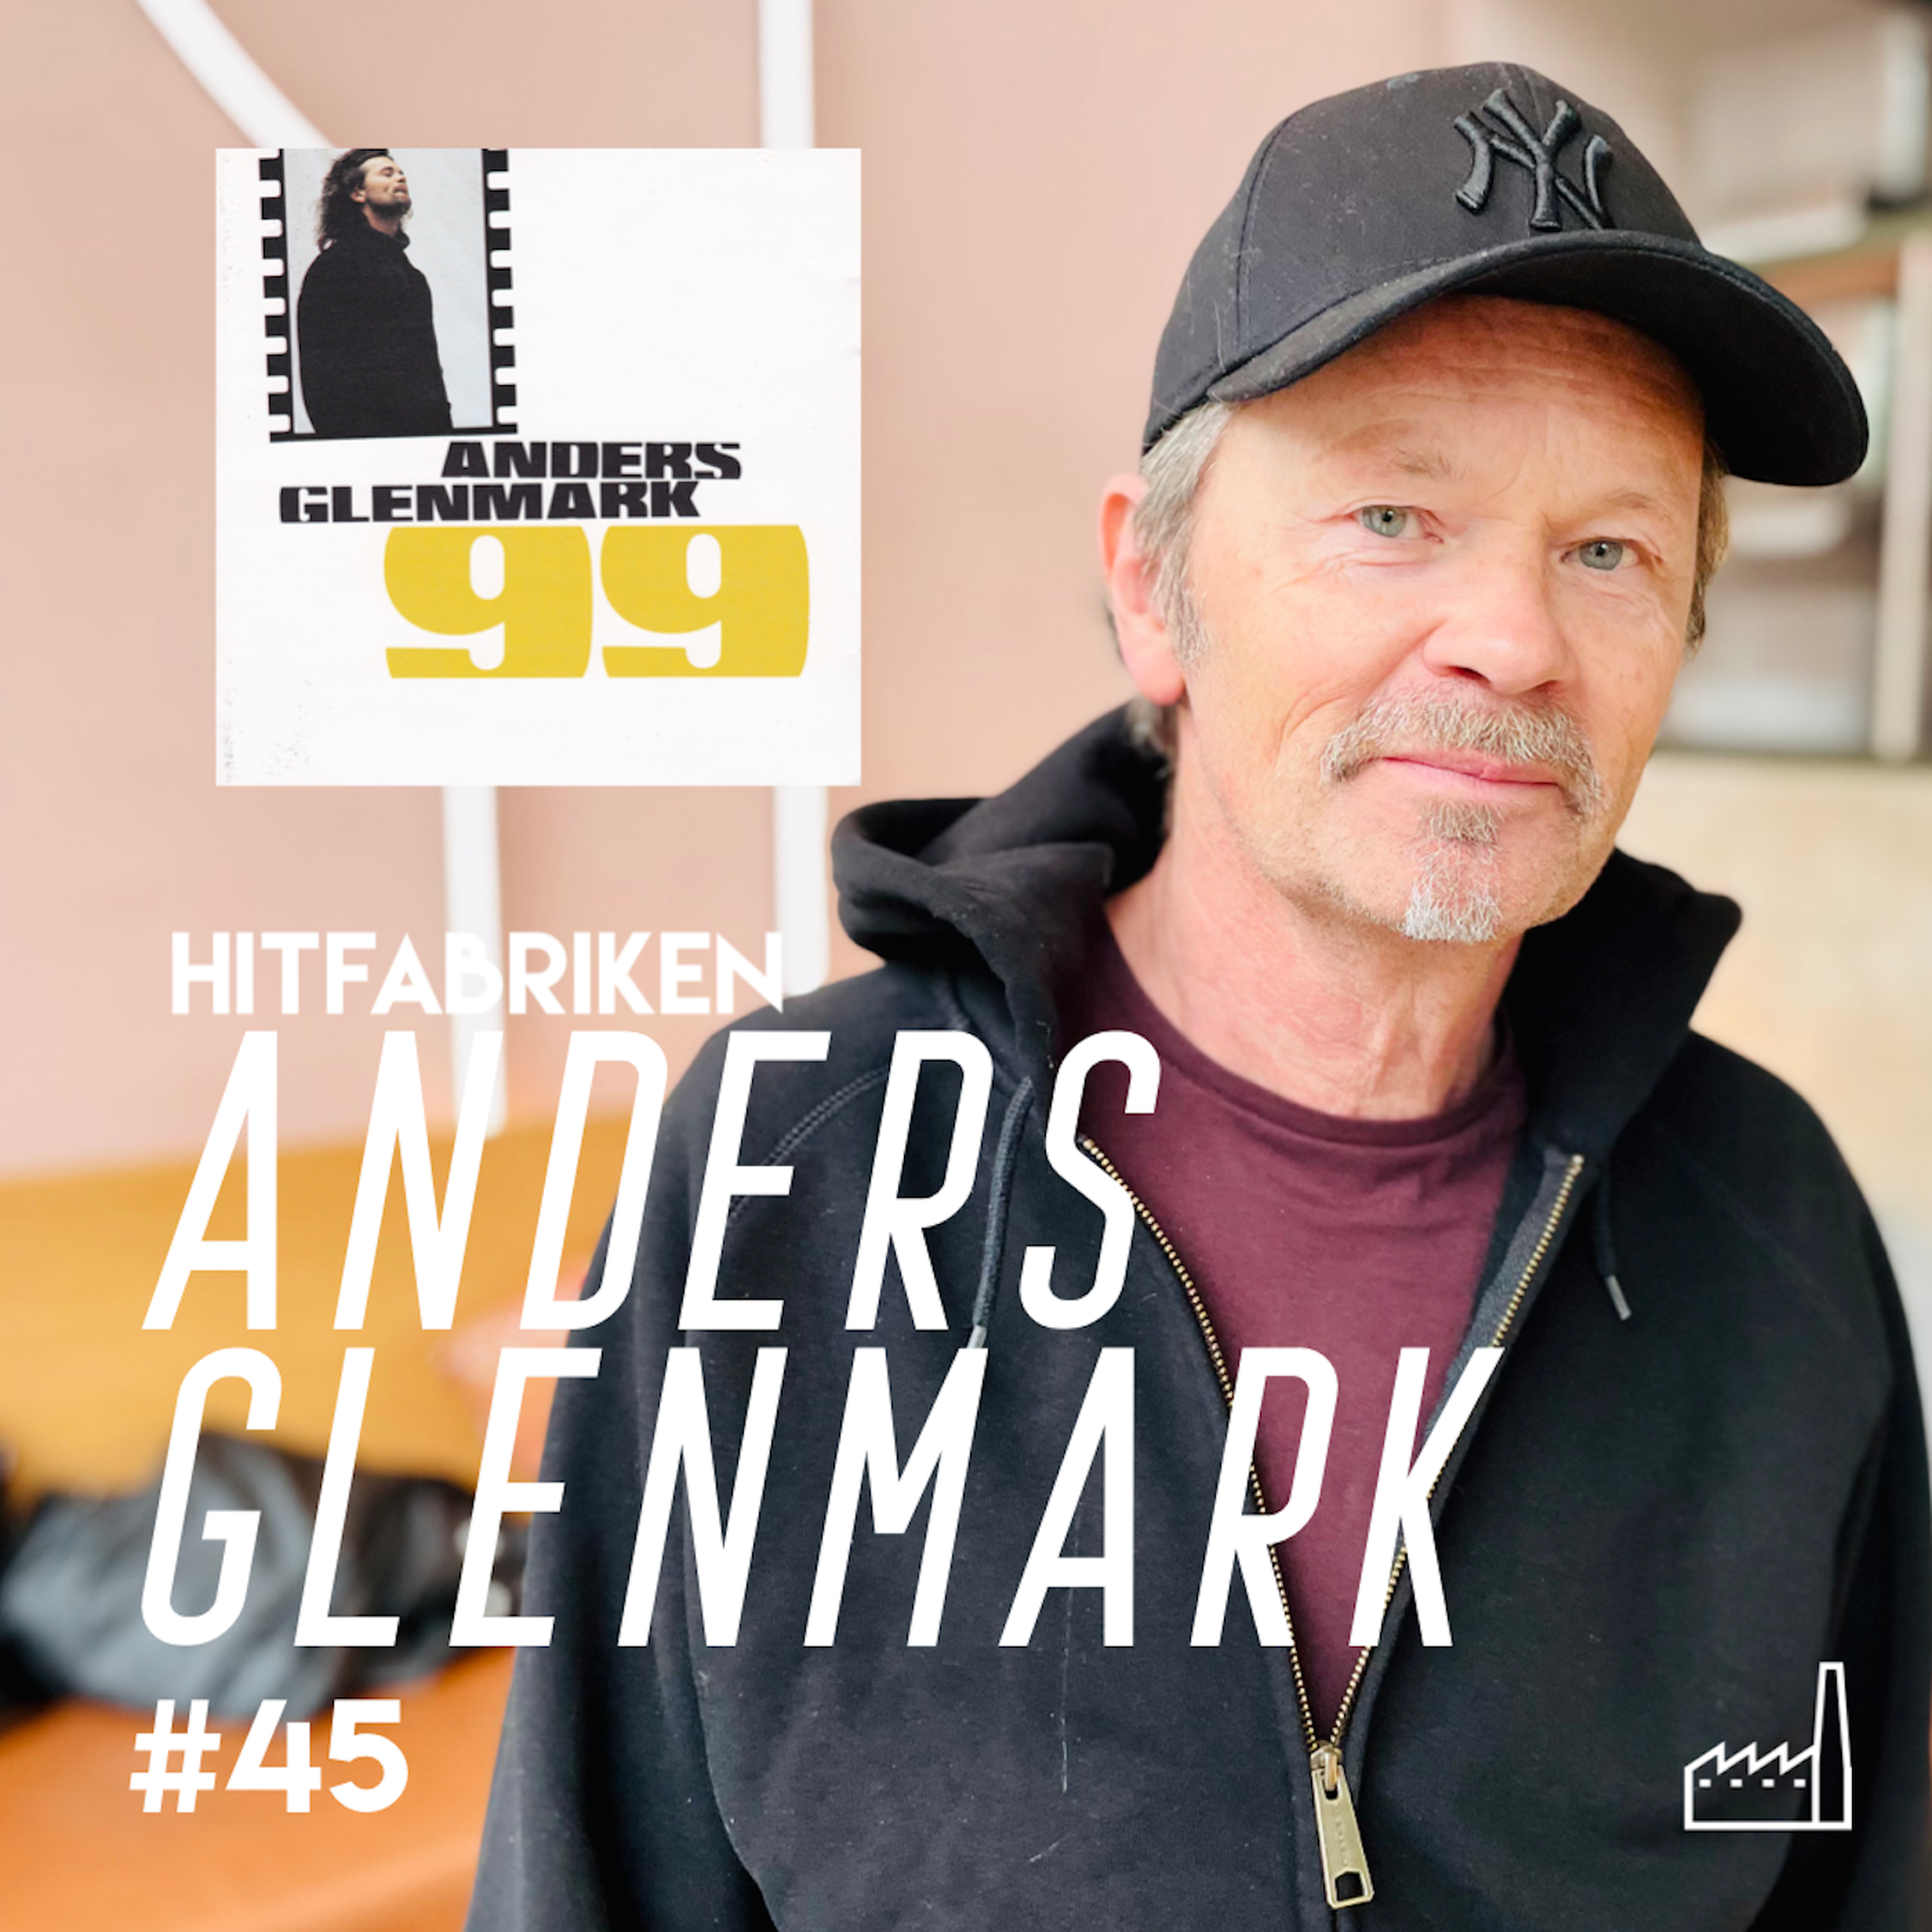 45. Anders Glenmark - ”99” låt-för-låt